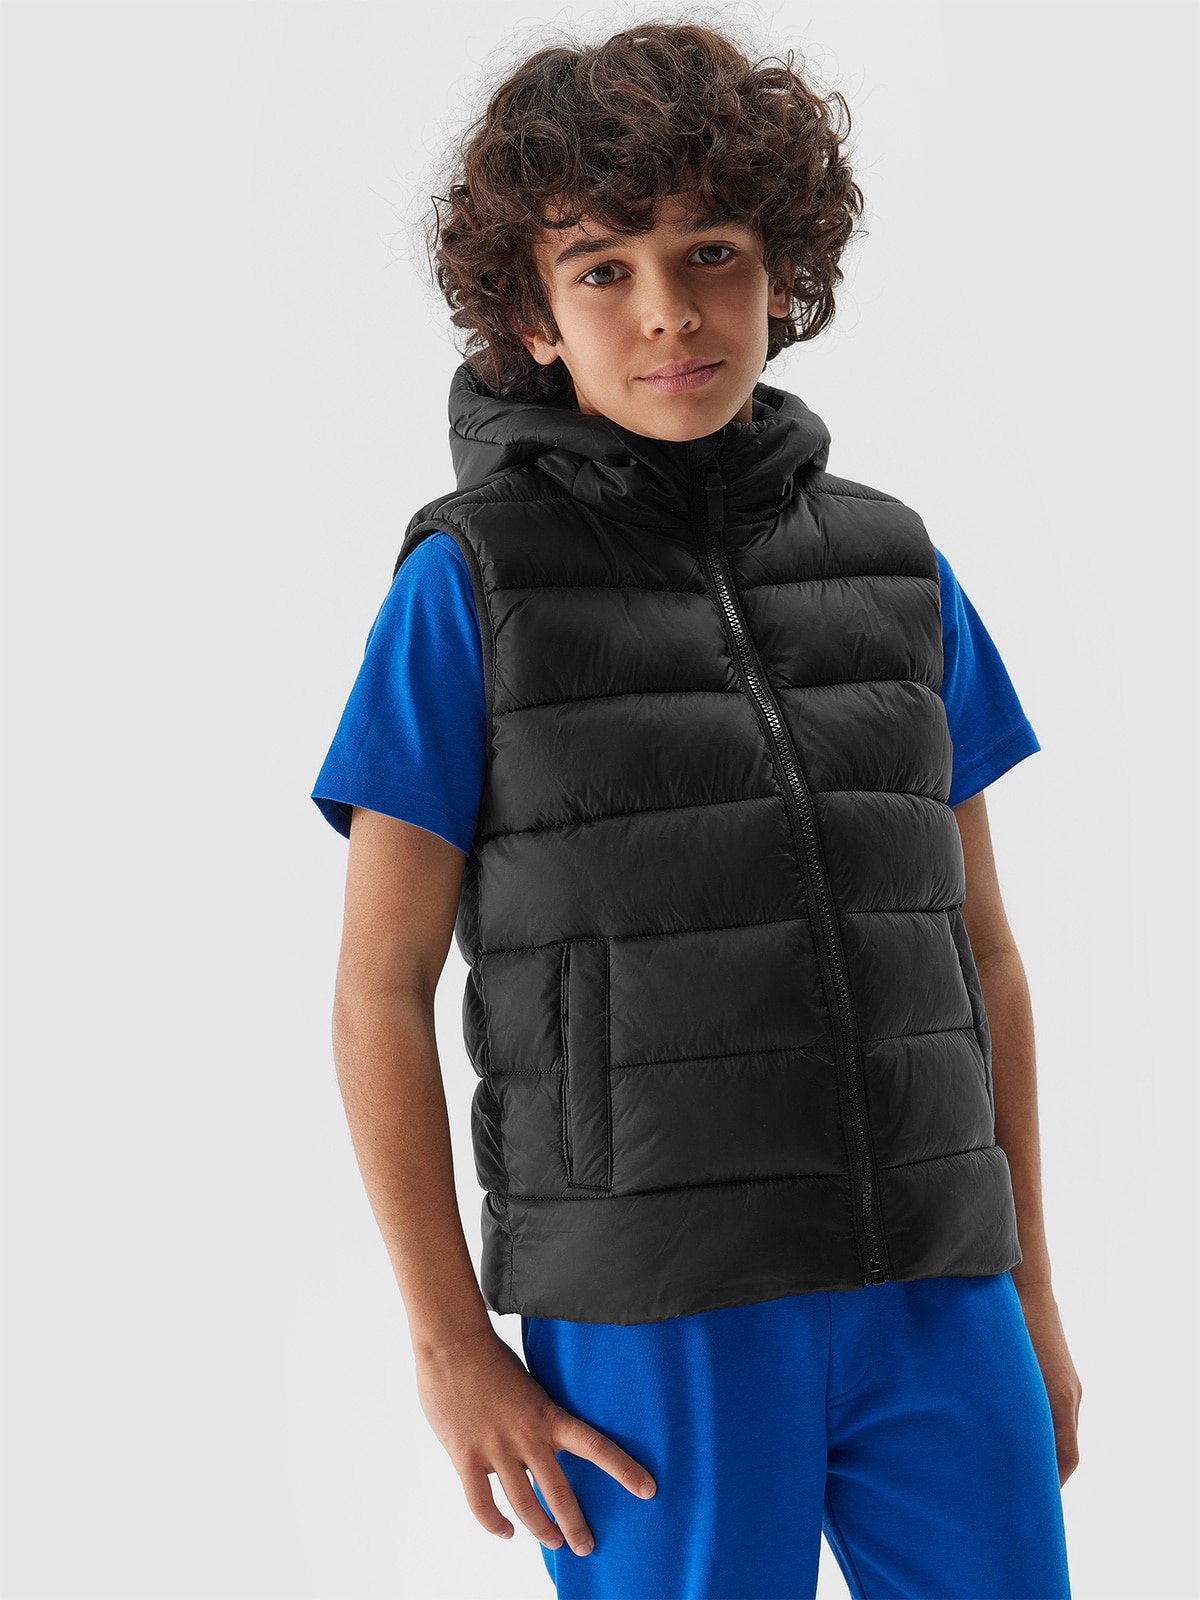 Chlapčenská zatepľovacia vesta so syntetickou výplňou - čierna